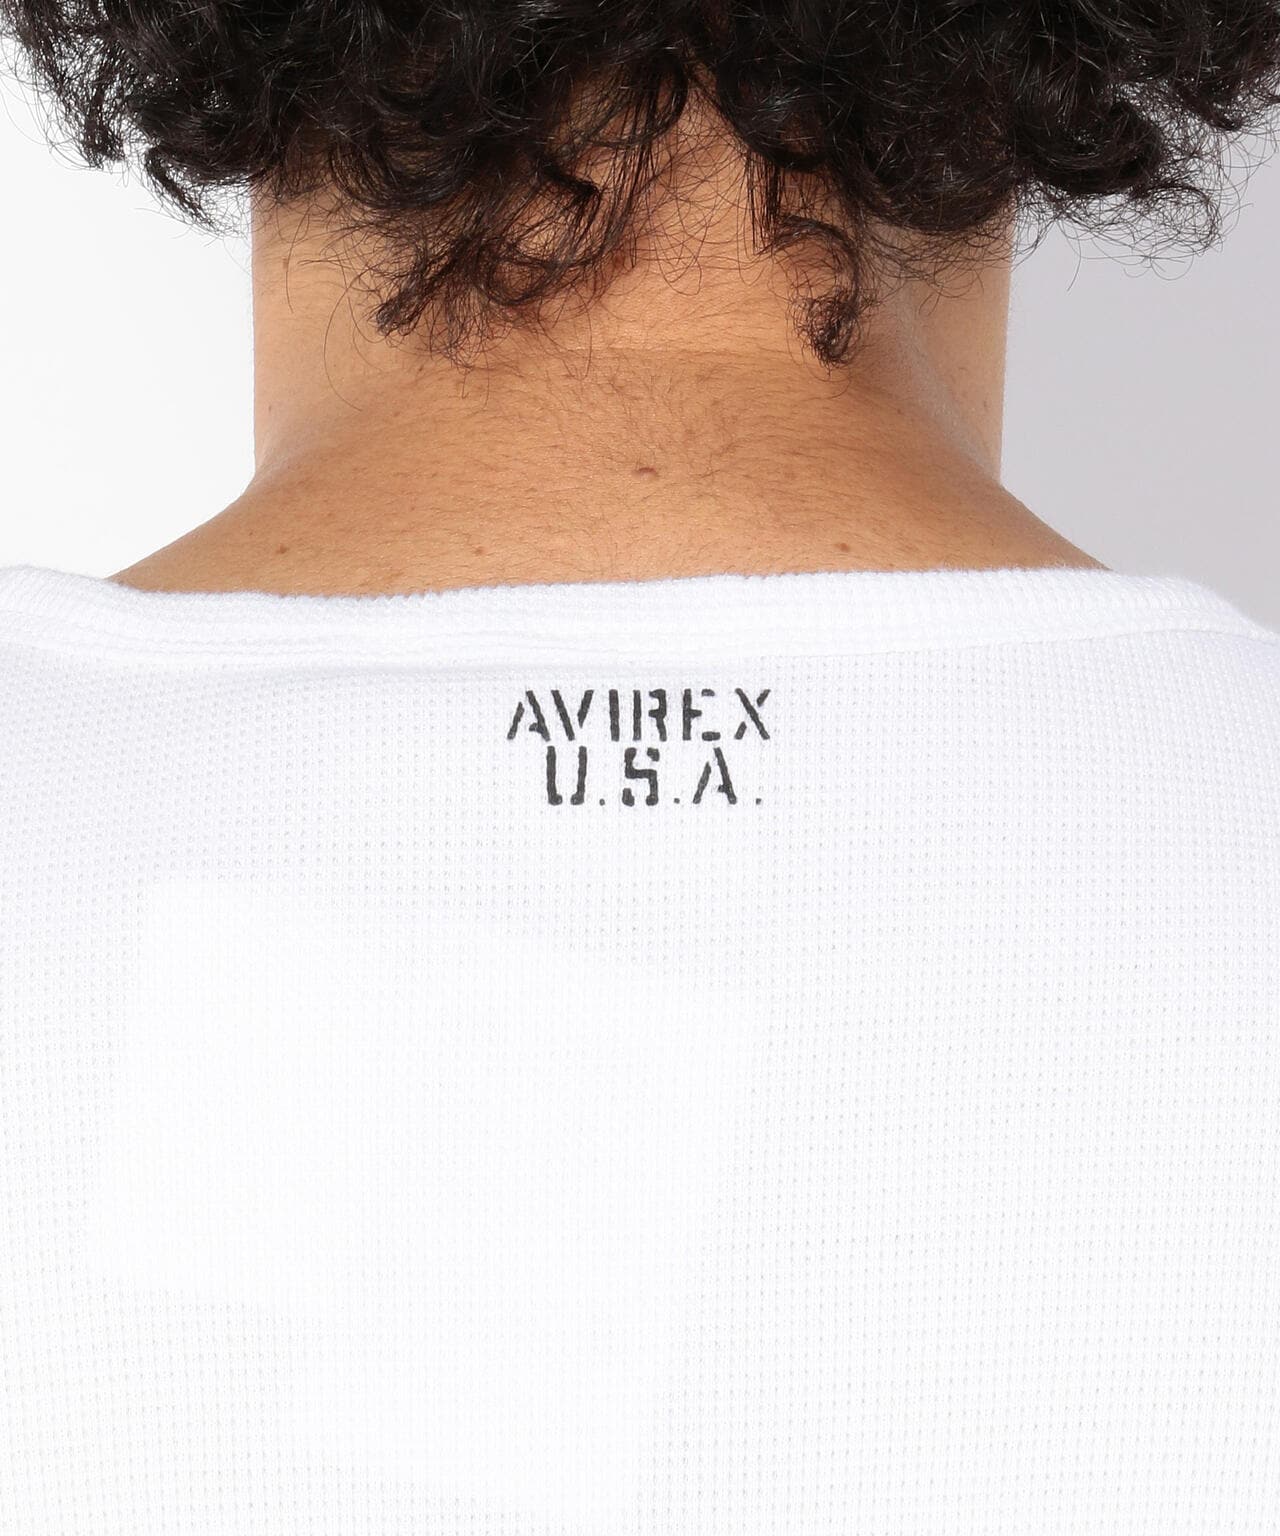 《DAILY》MINI WAFFLE S/S CREW NECK T-SHIRT/ミニワッフル 半袖 クルーネック Tシャツ  デイリー